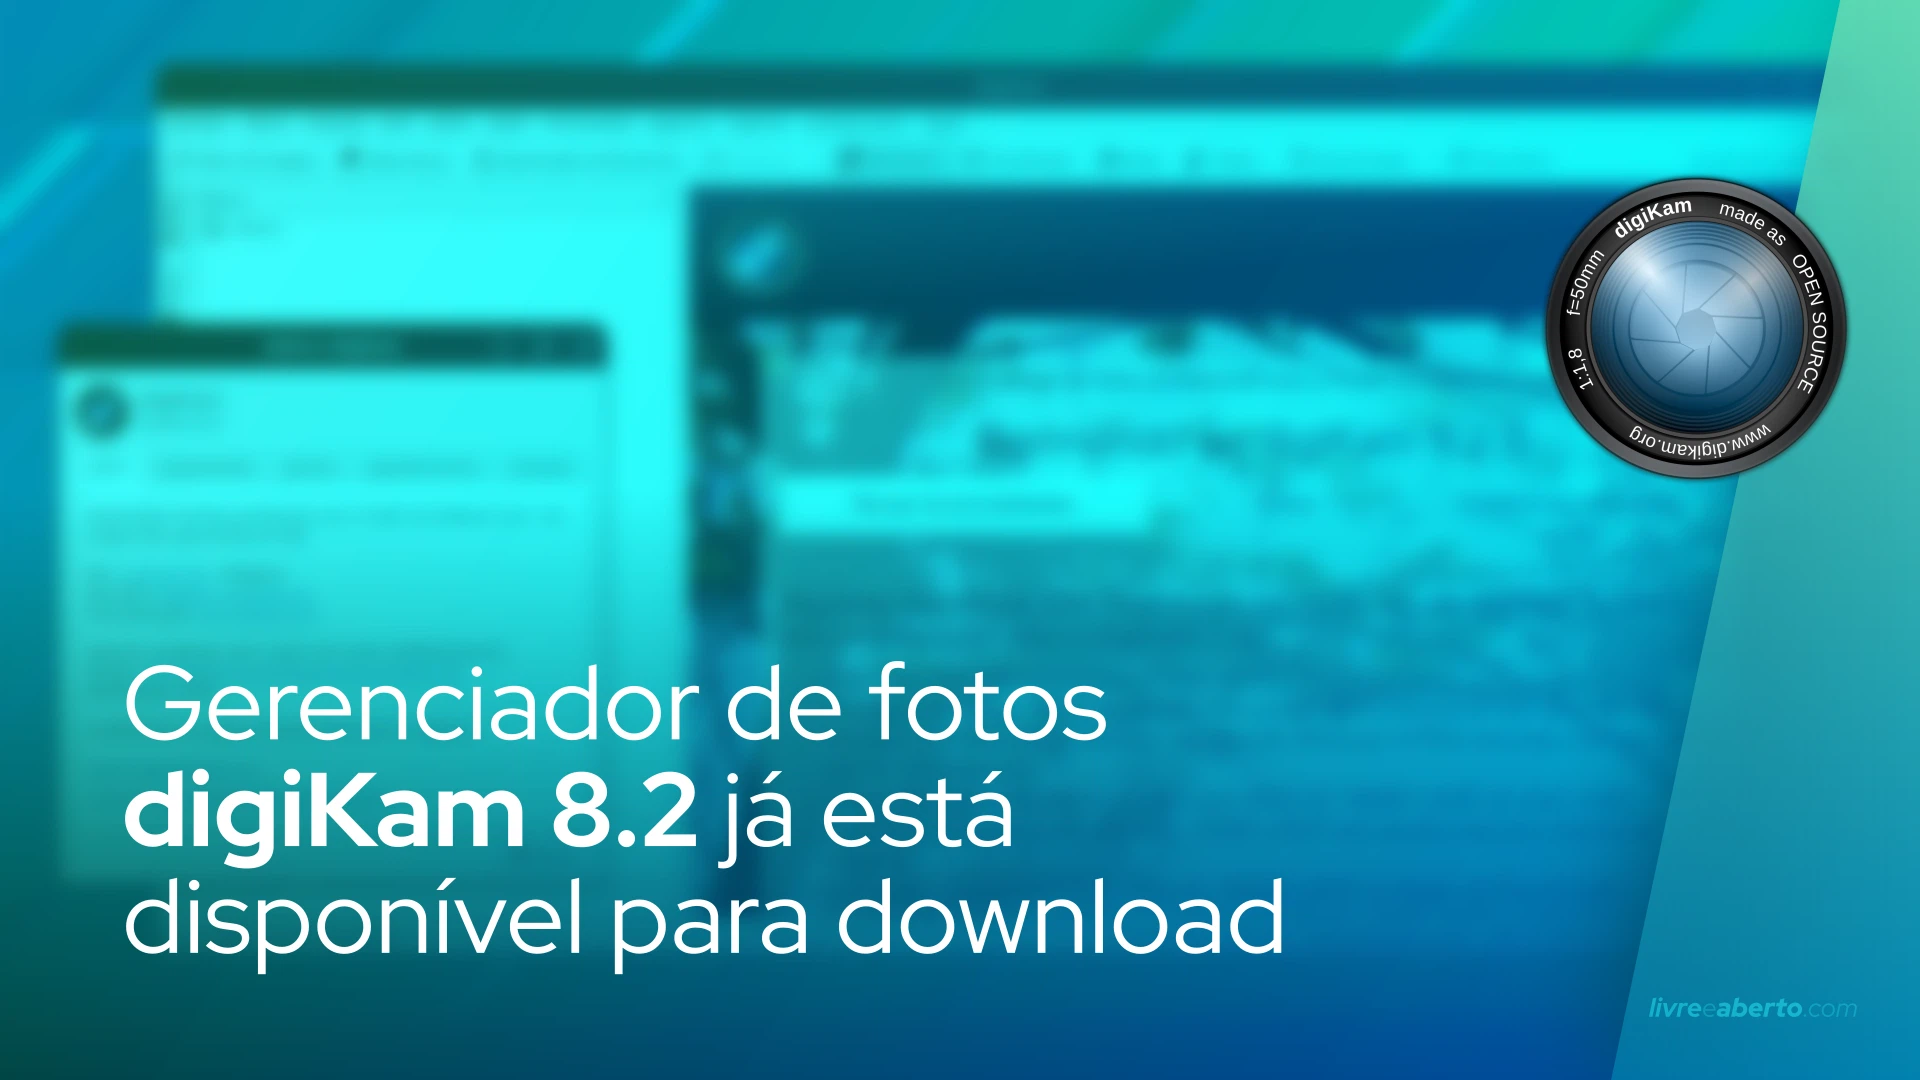 Gerenciador de fotos digiKam 8.2 já está disponível para download